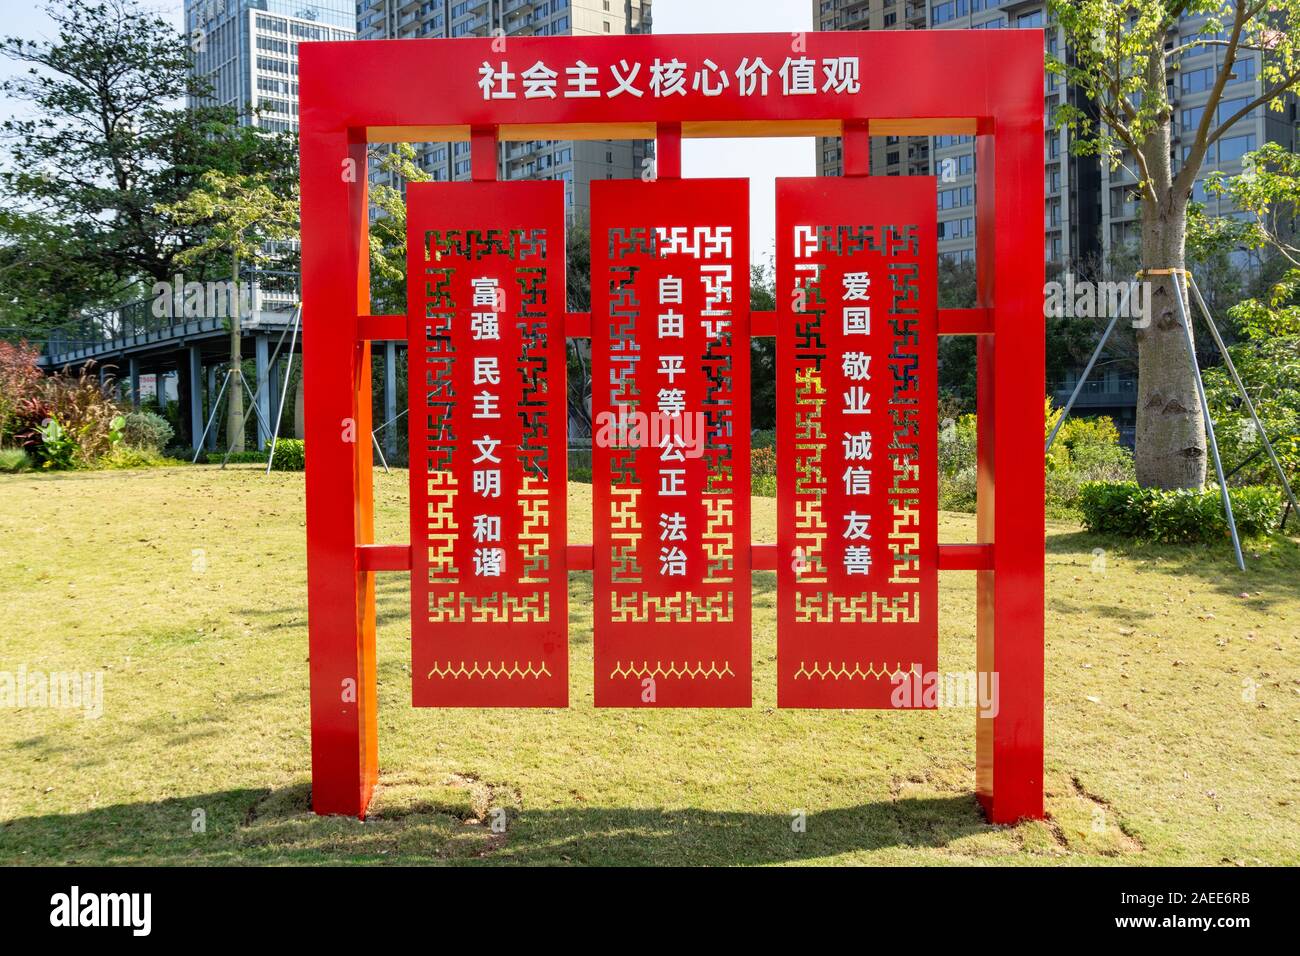 Chinesische Wörter Zeichen her, der die Grundsätze für eine harmonische und zivilisierten Gesellschaft in Shenzhen. Stockfoto